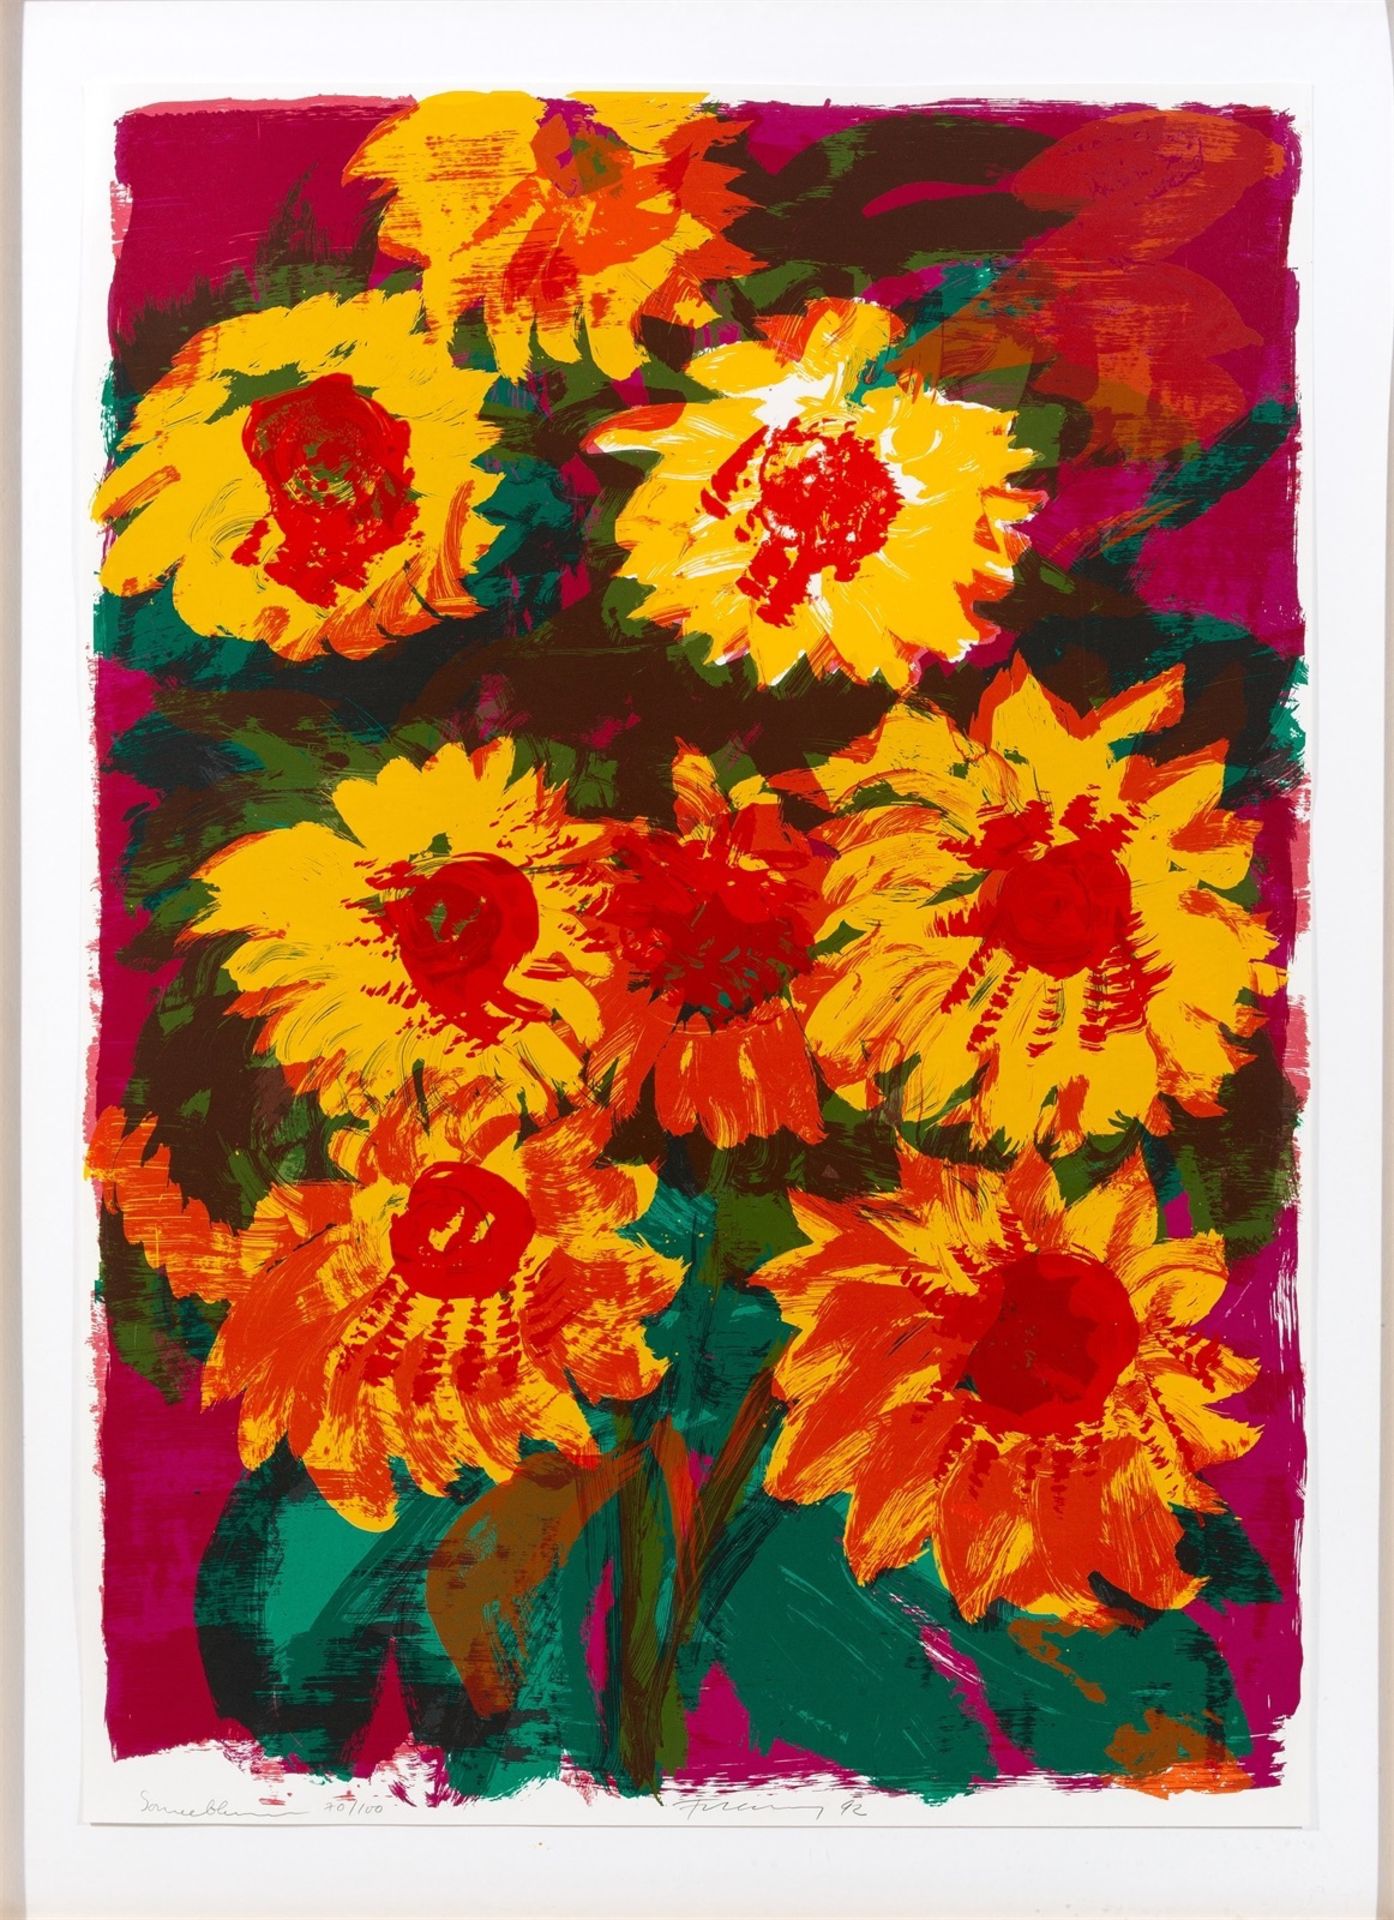 Rainer Fetting. ”Sonnenblumen”. 1992 - Image 2 of 3